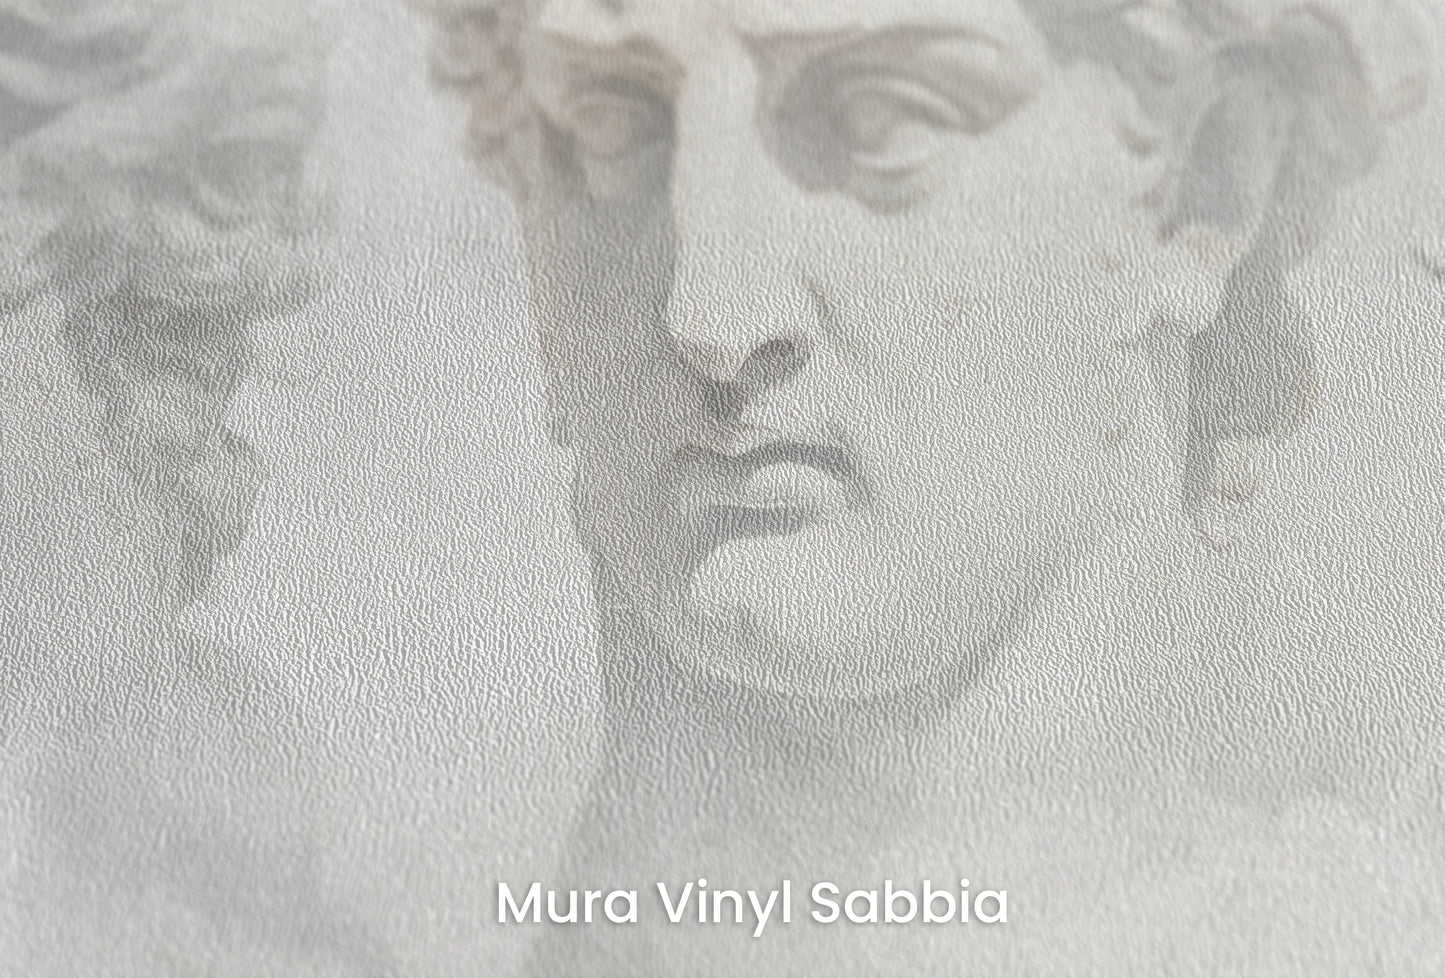 Zbliżenie na artystyczną fototapetę o nazwie Sorrow of Niobe na podłożu Mura Vinyl Sabbia struktura grubego ziarna piasku.